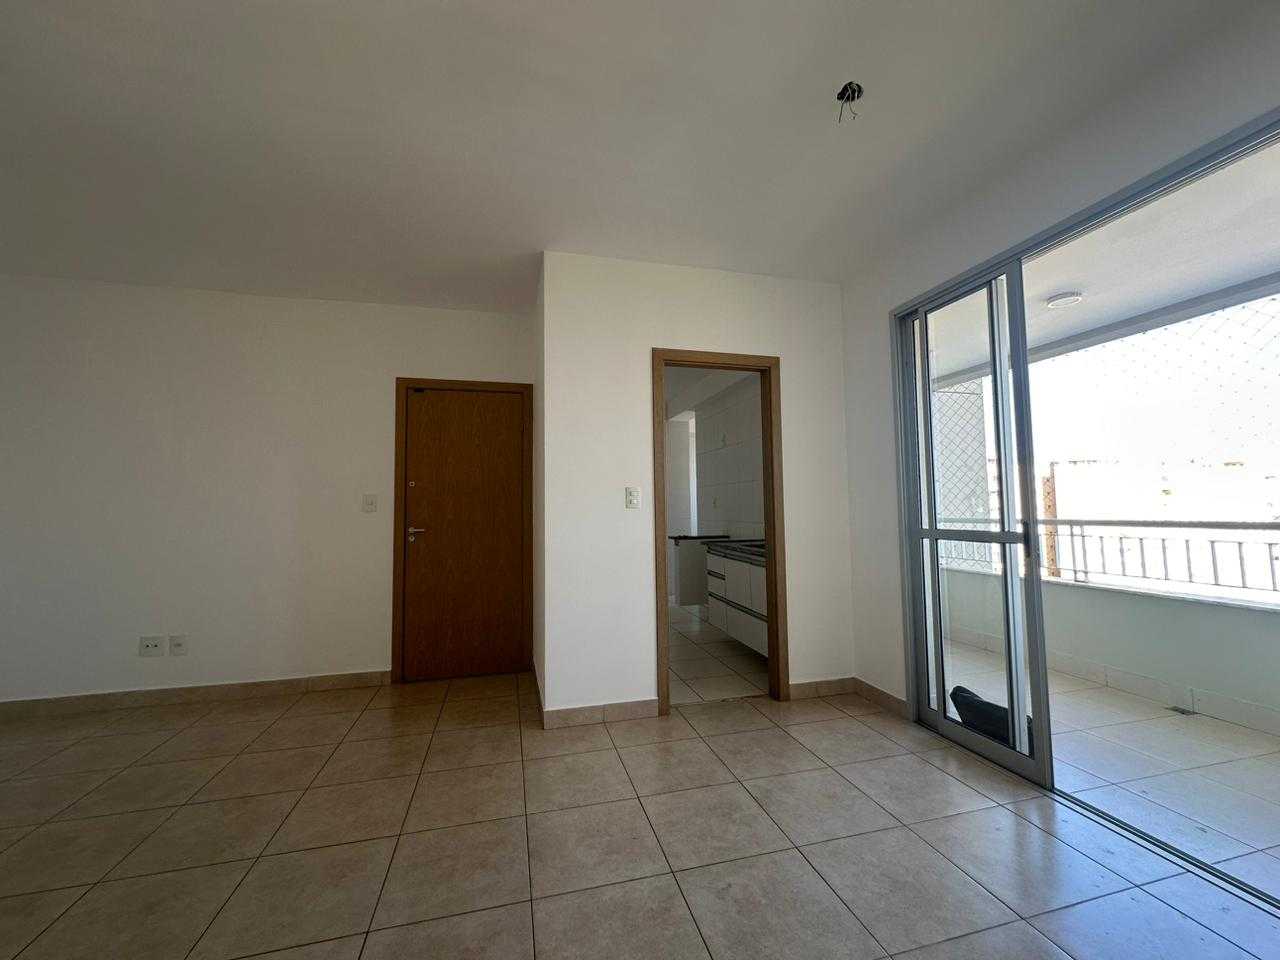 Apartamento, 30 quartos, 120 m² - Foto 2